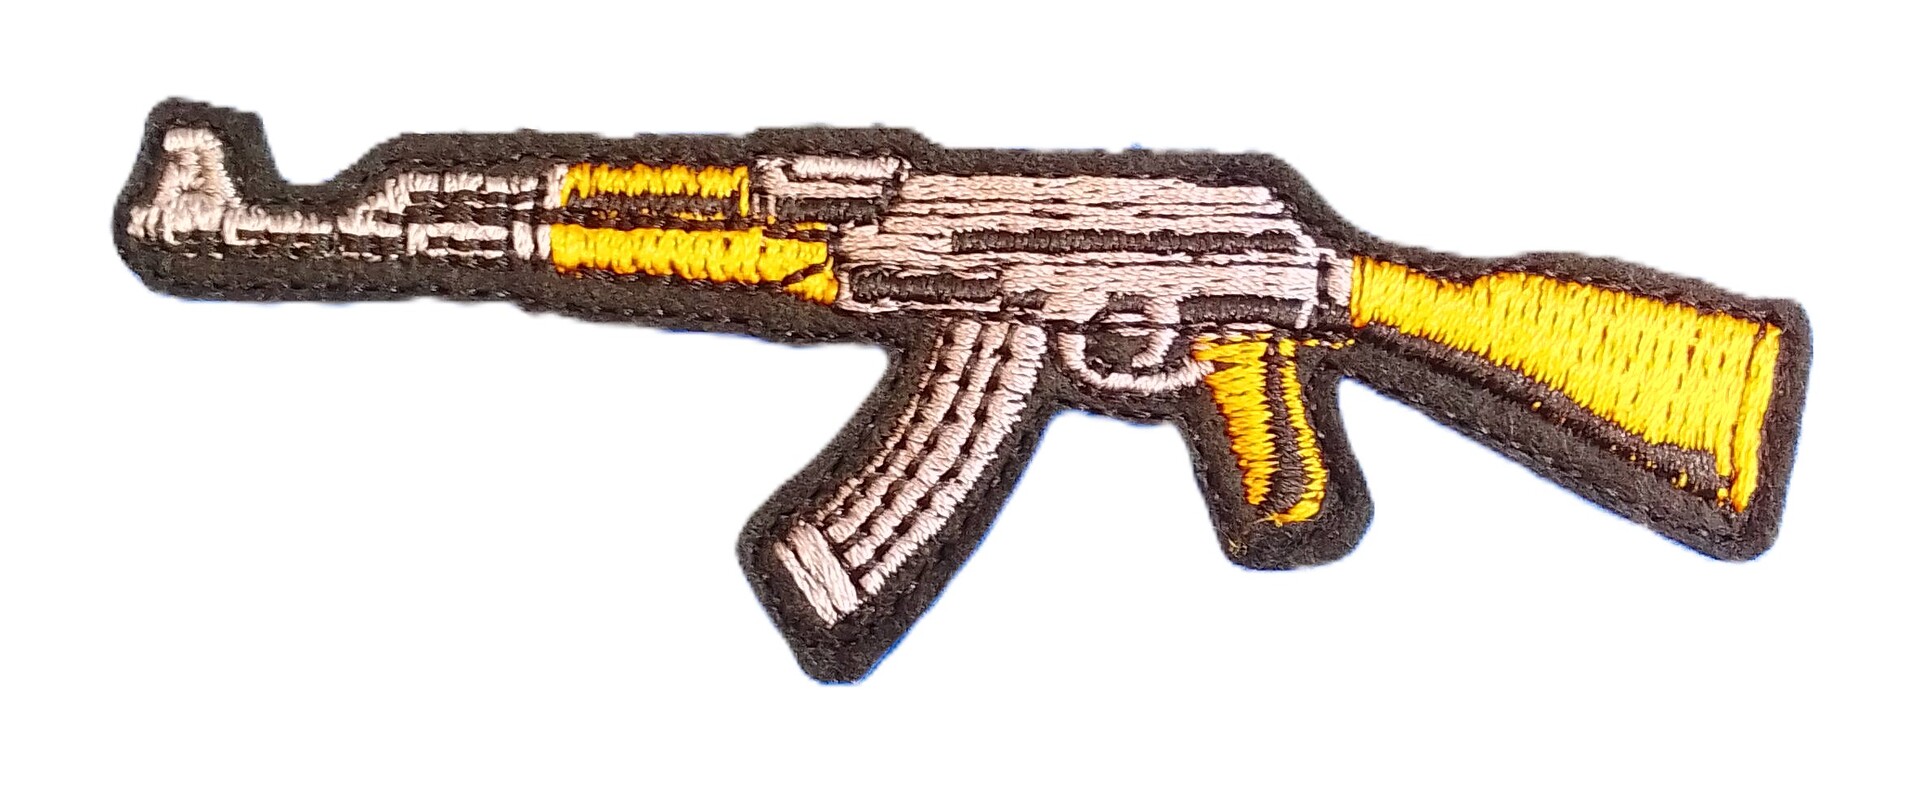 GM - Naszywka AK47